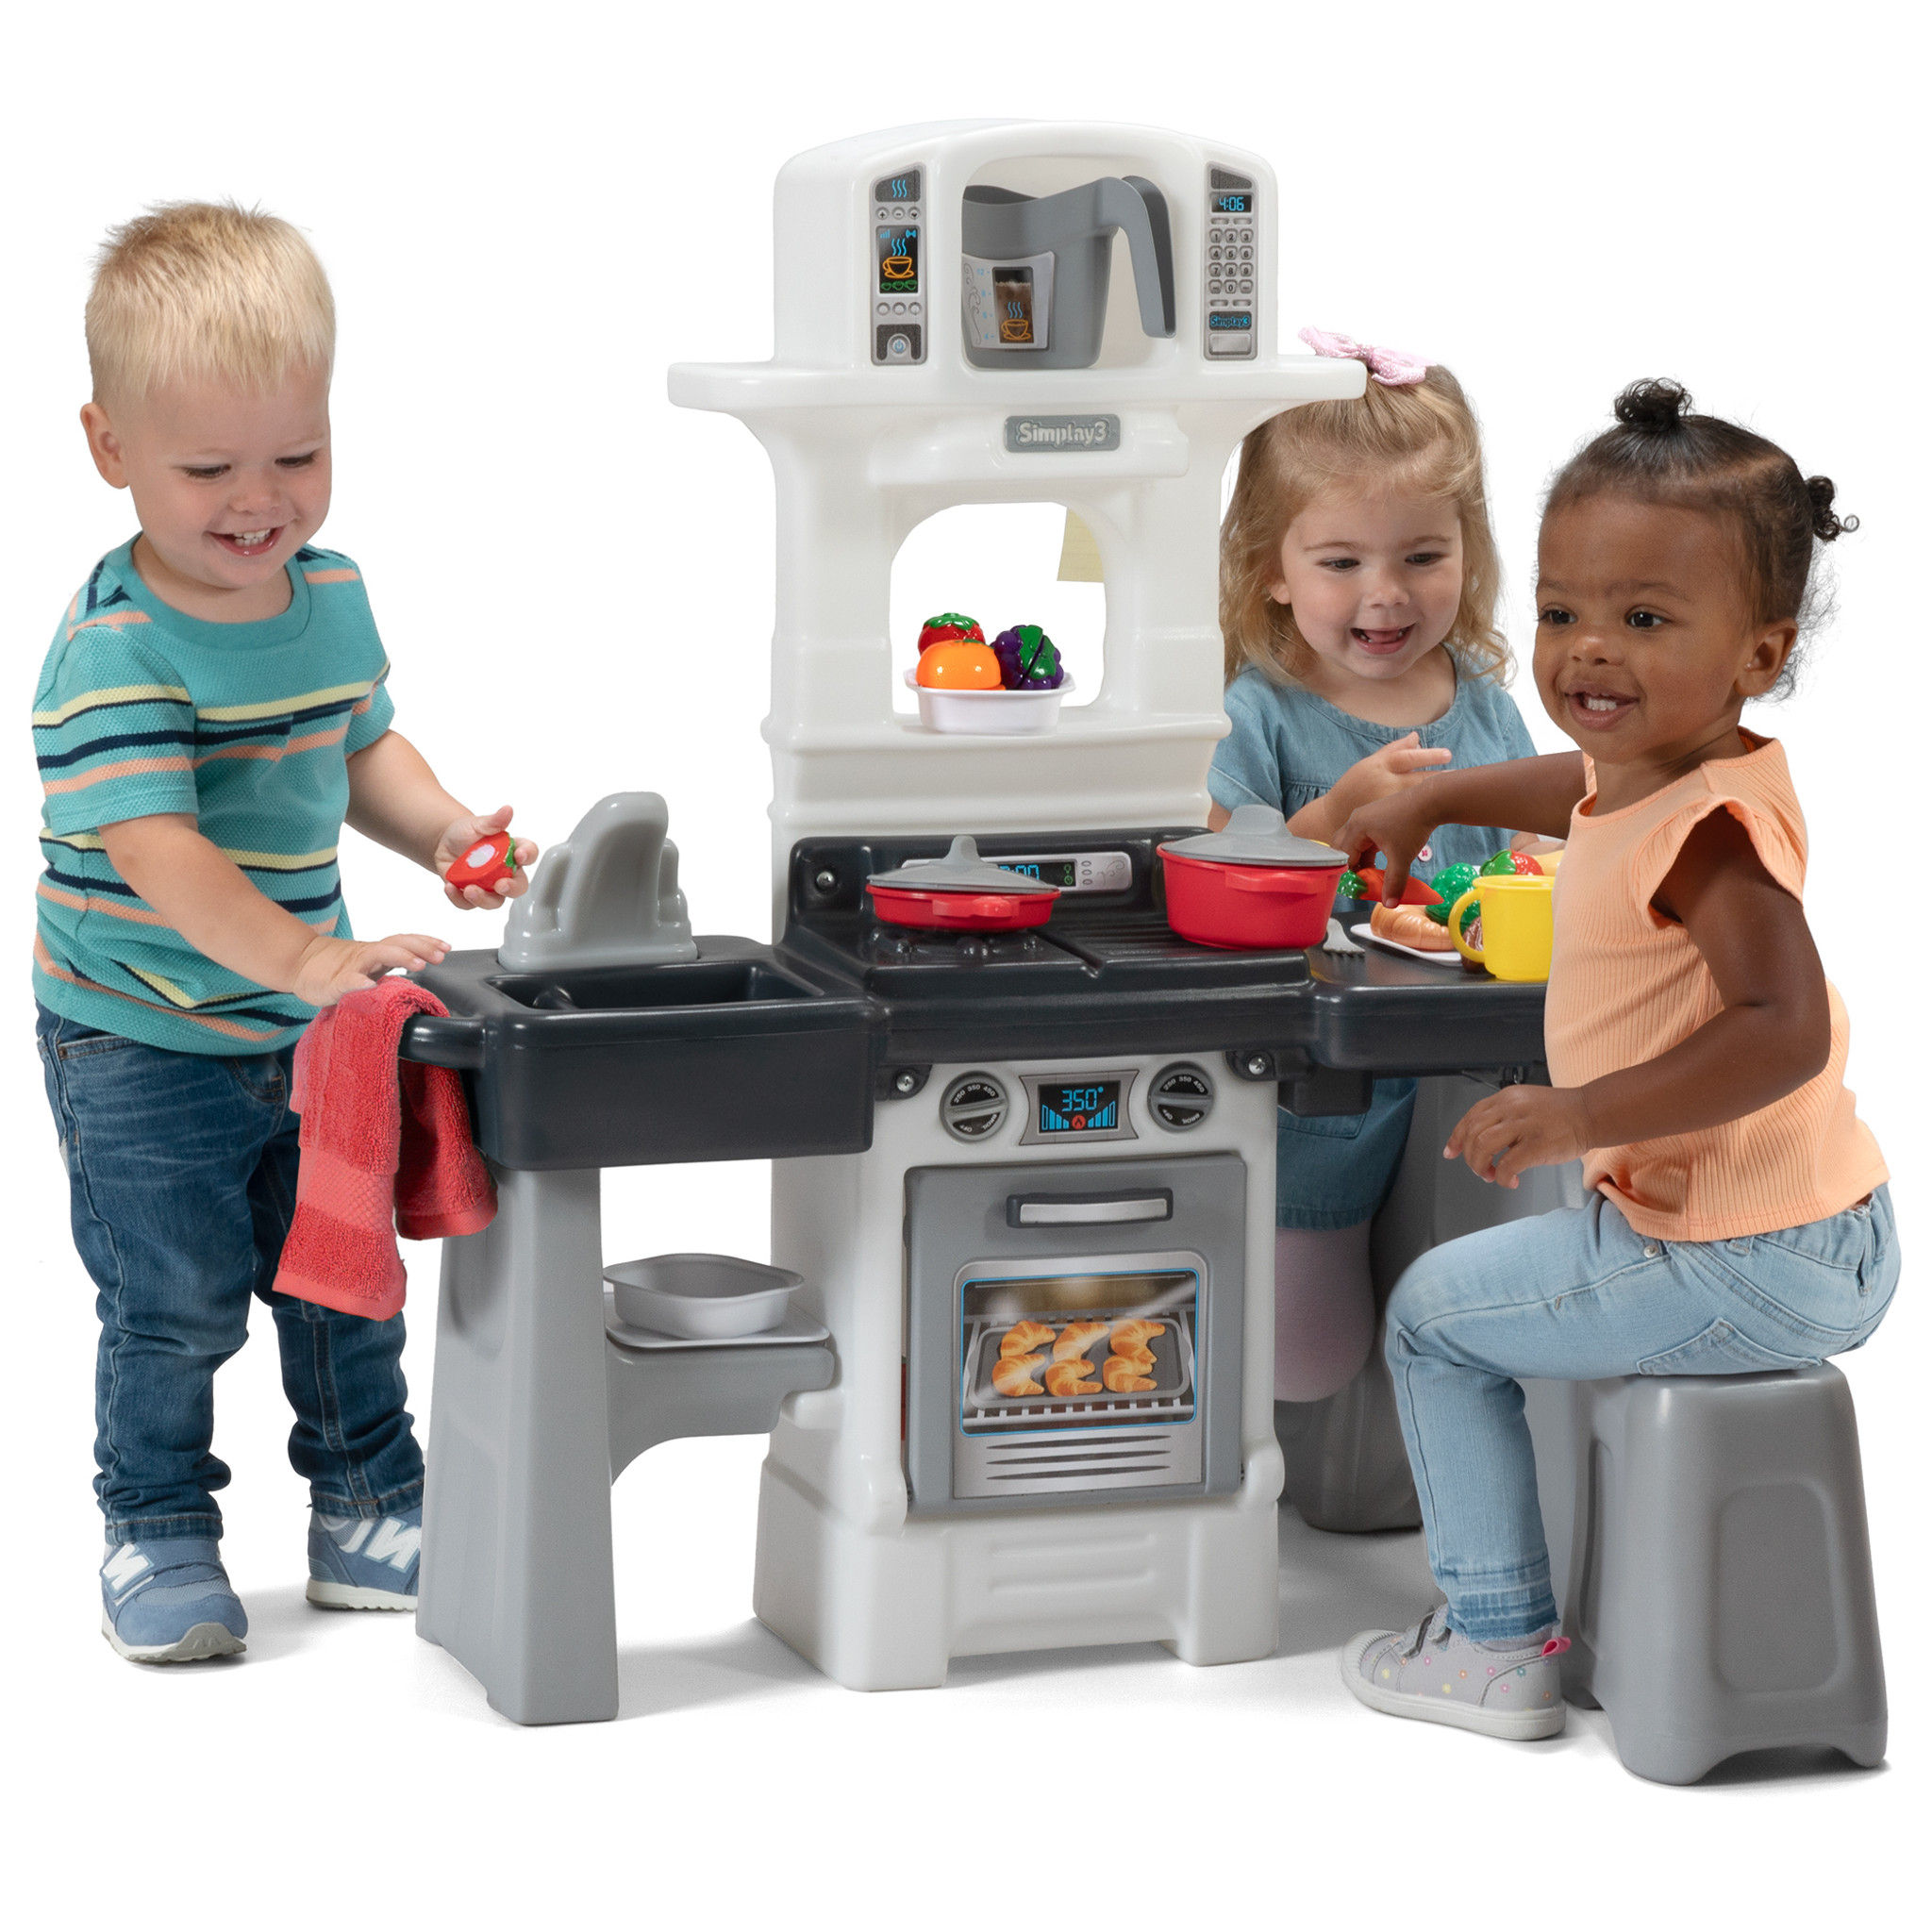 Kids Baking Set, Kids Cooking Set, Toddler Toys, Toddler Kitchen